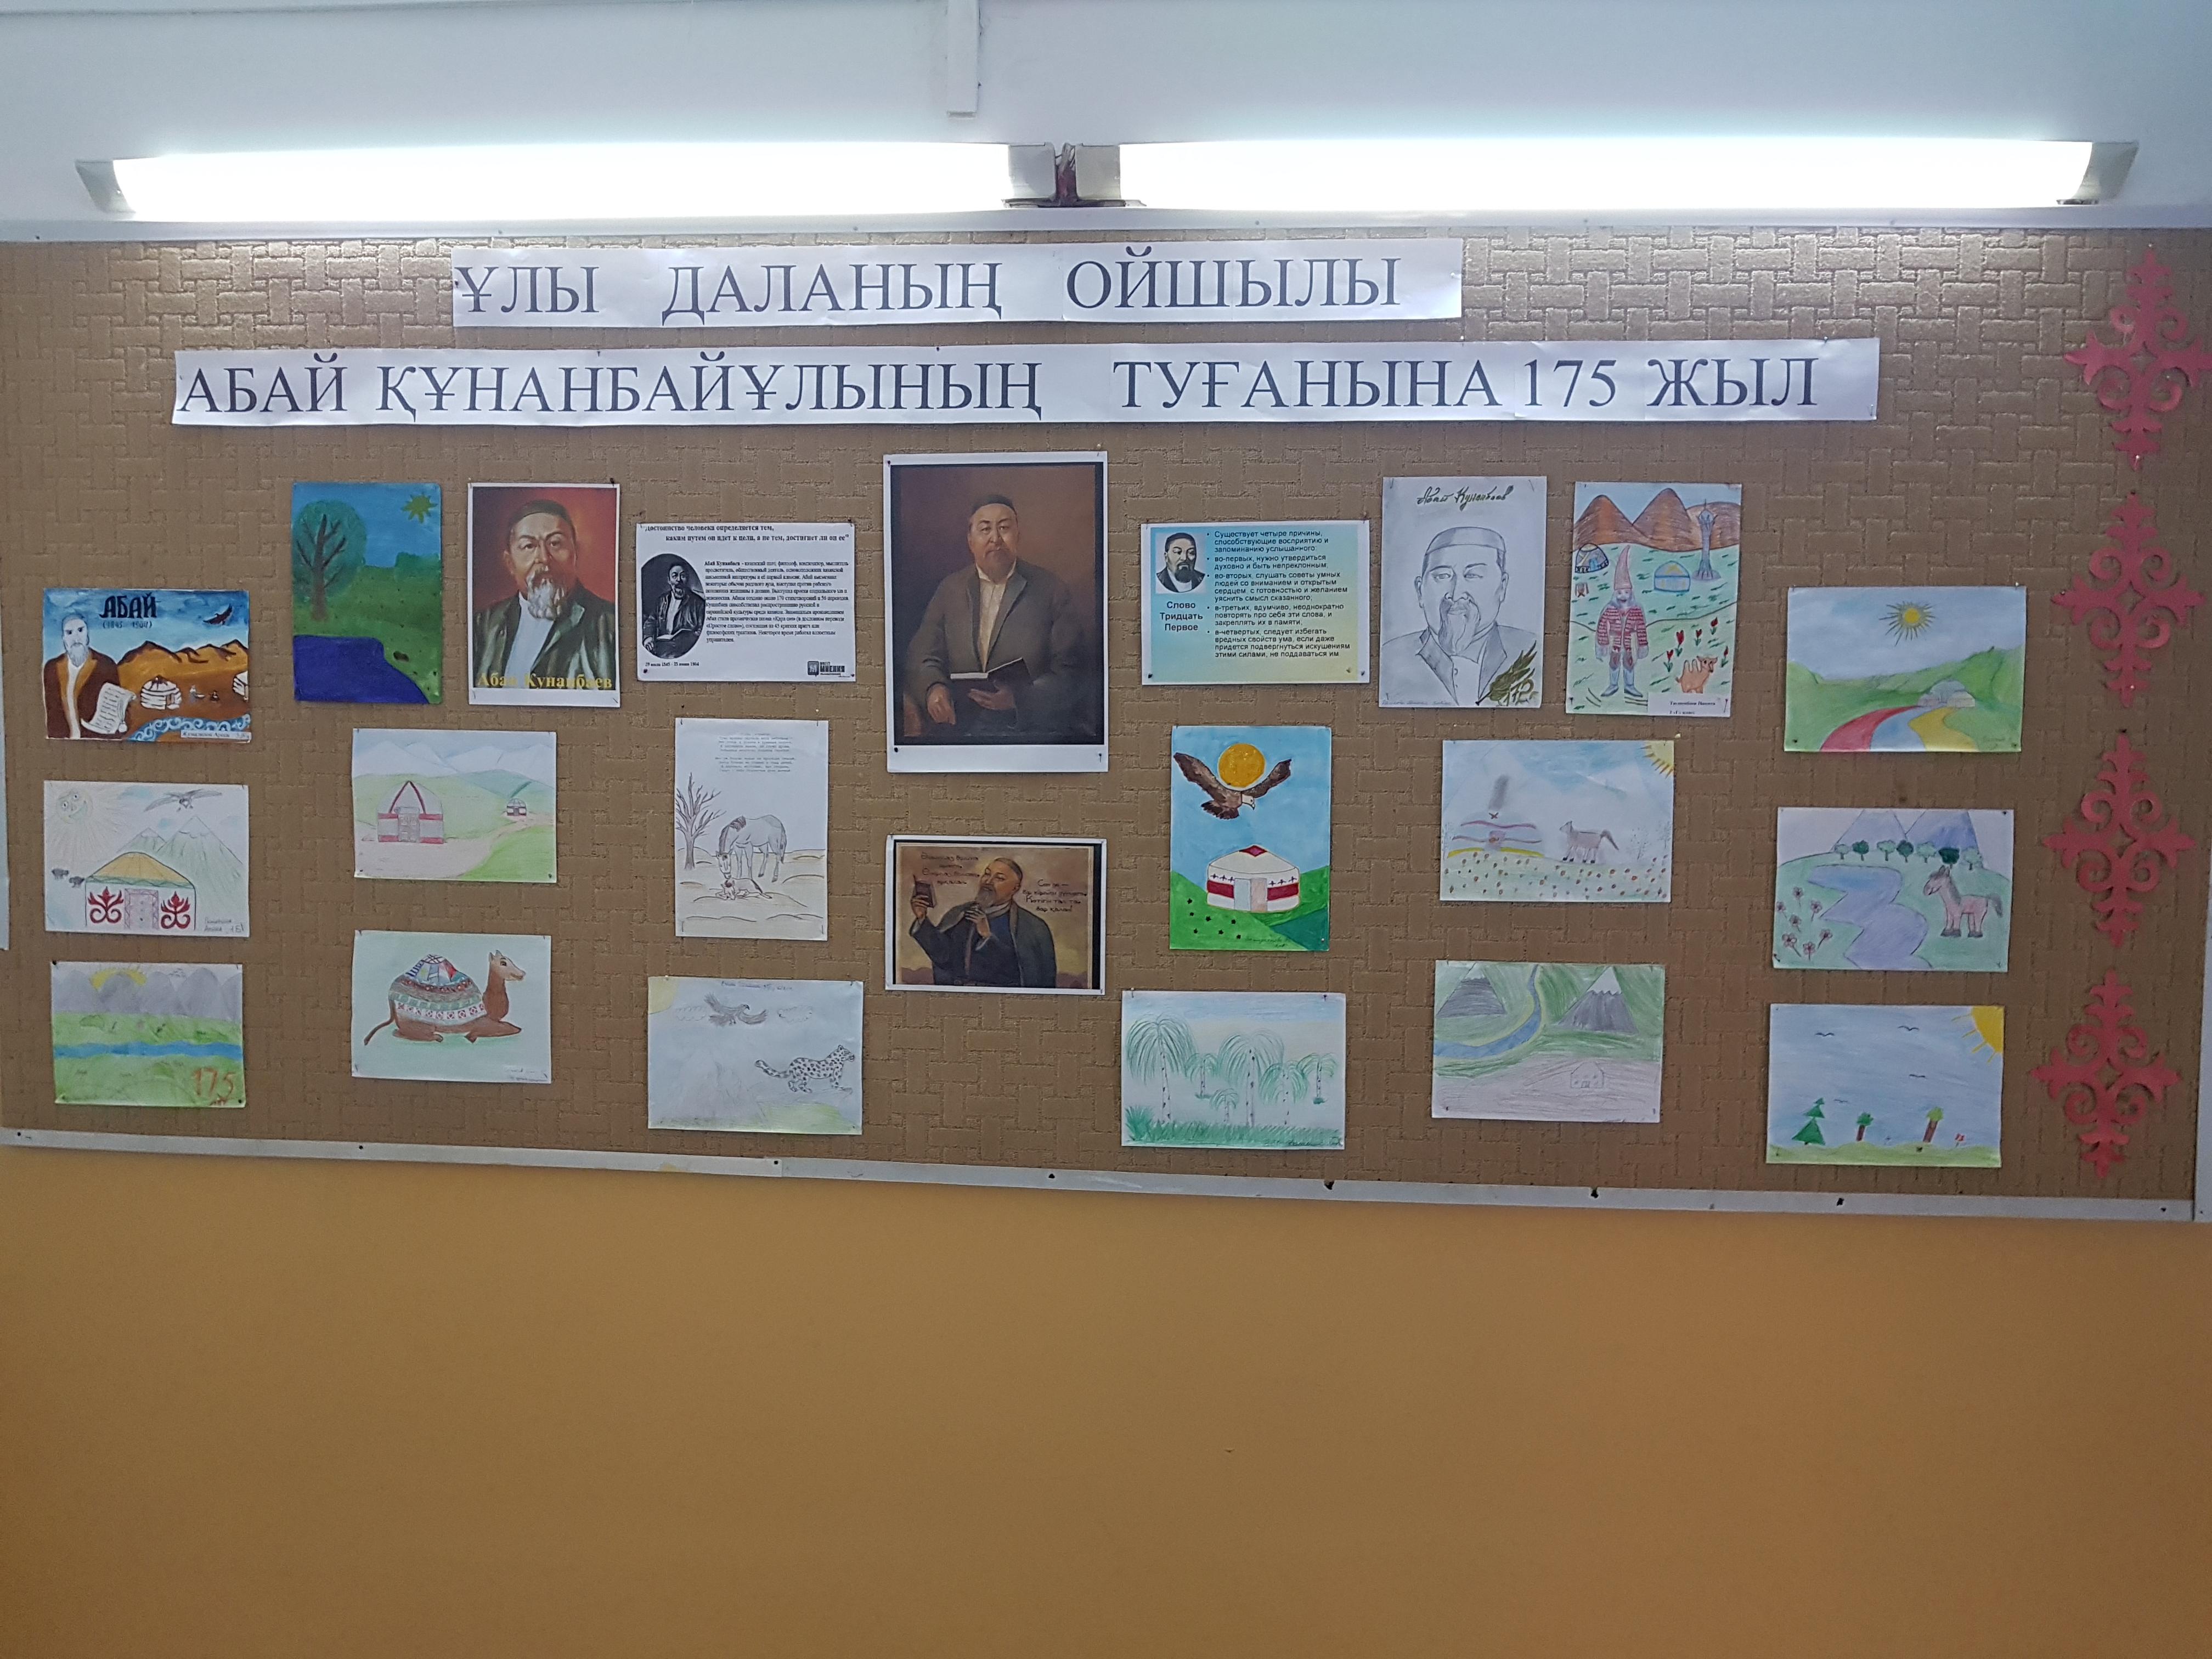 Выставка рисунков и плакатов по творчеству и биографии великого поэта Абая